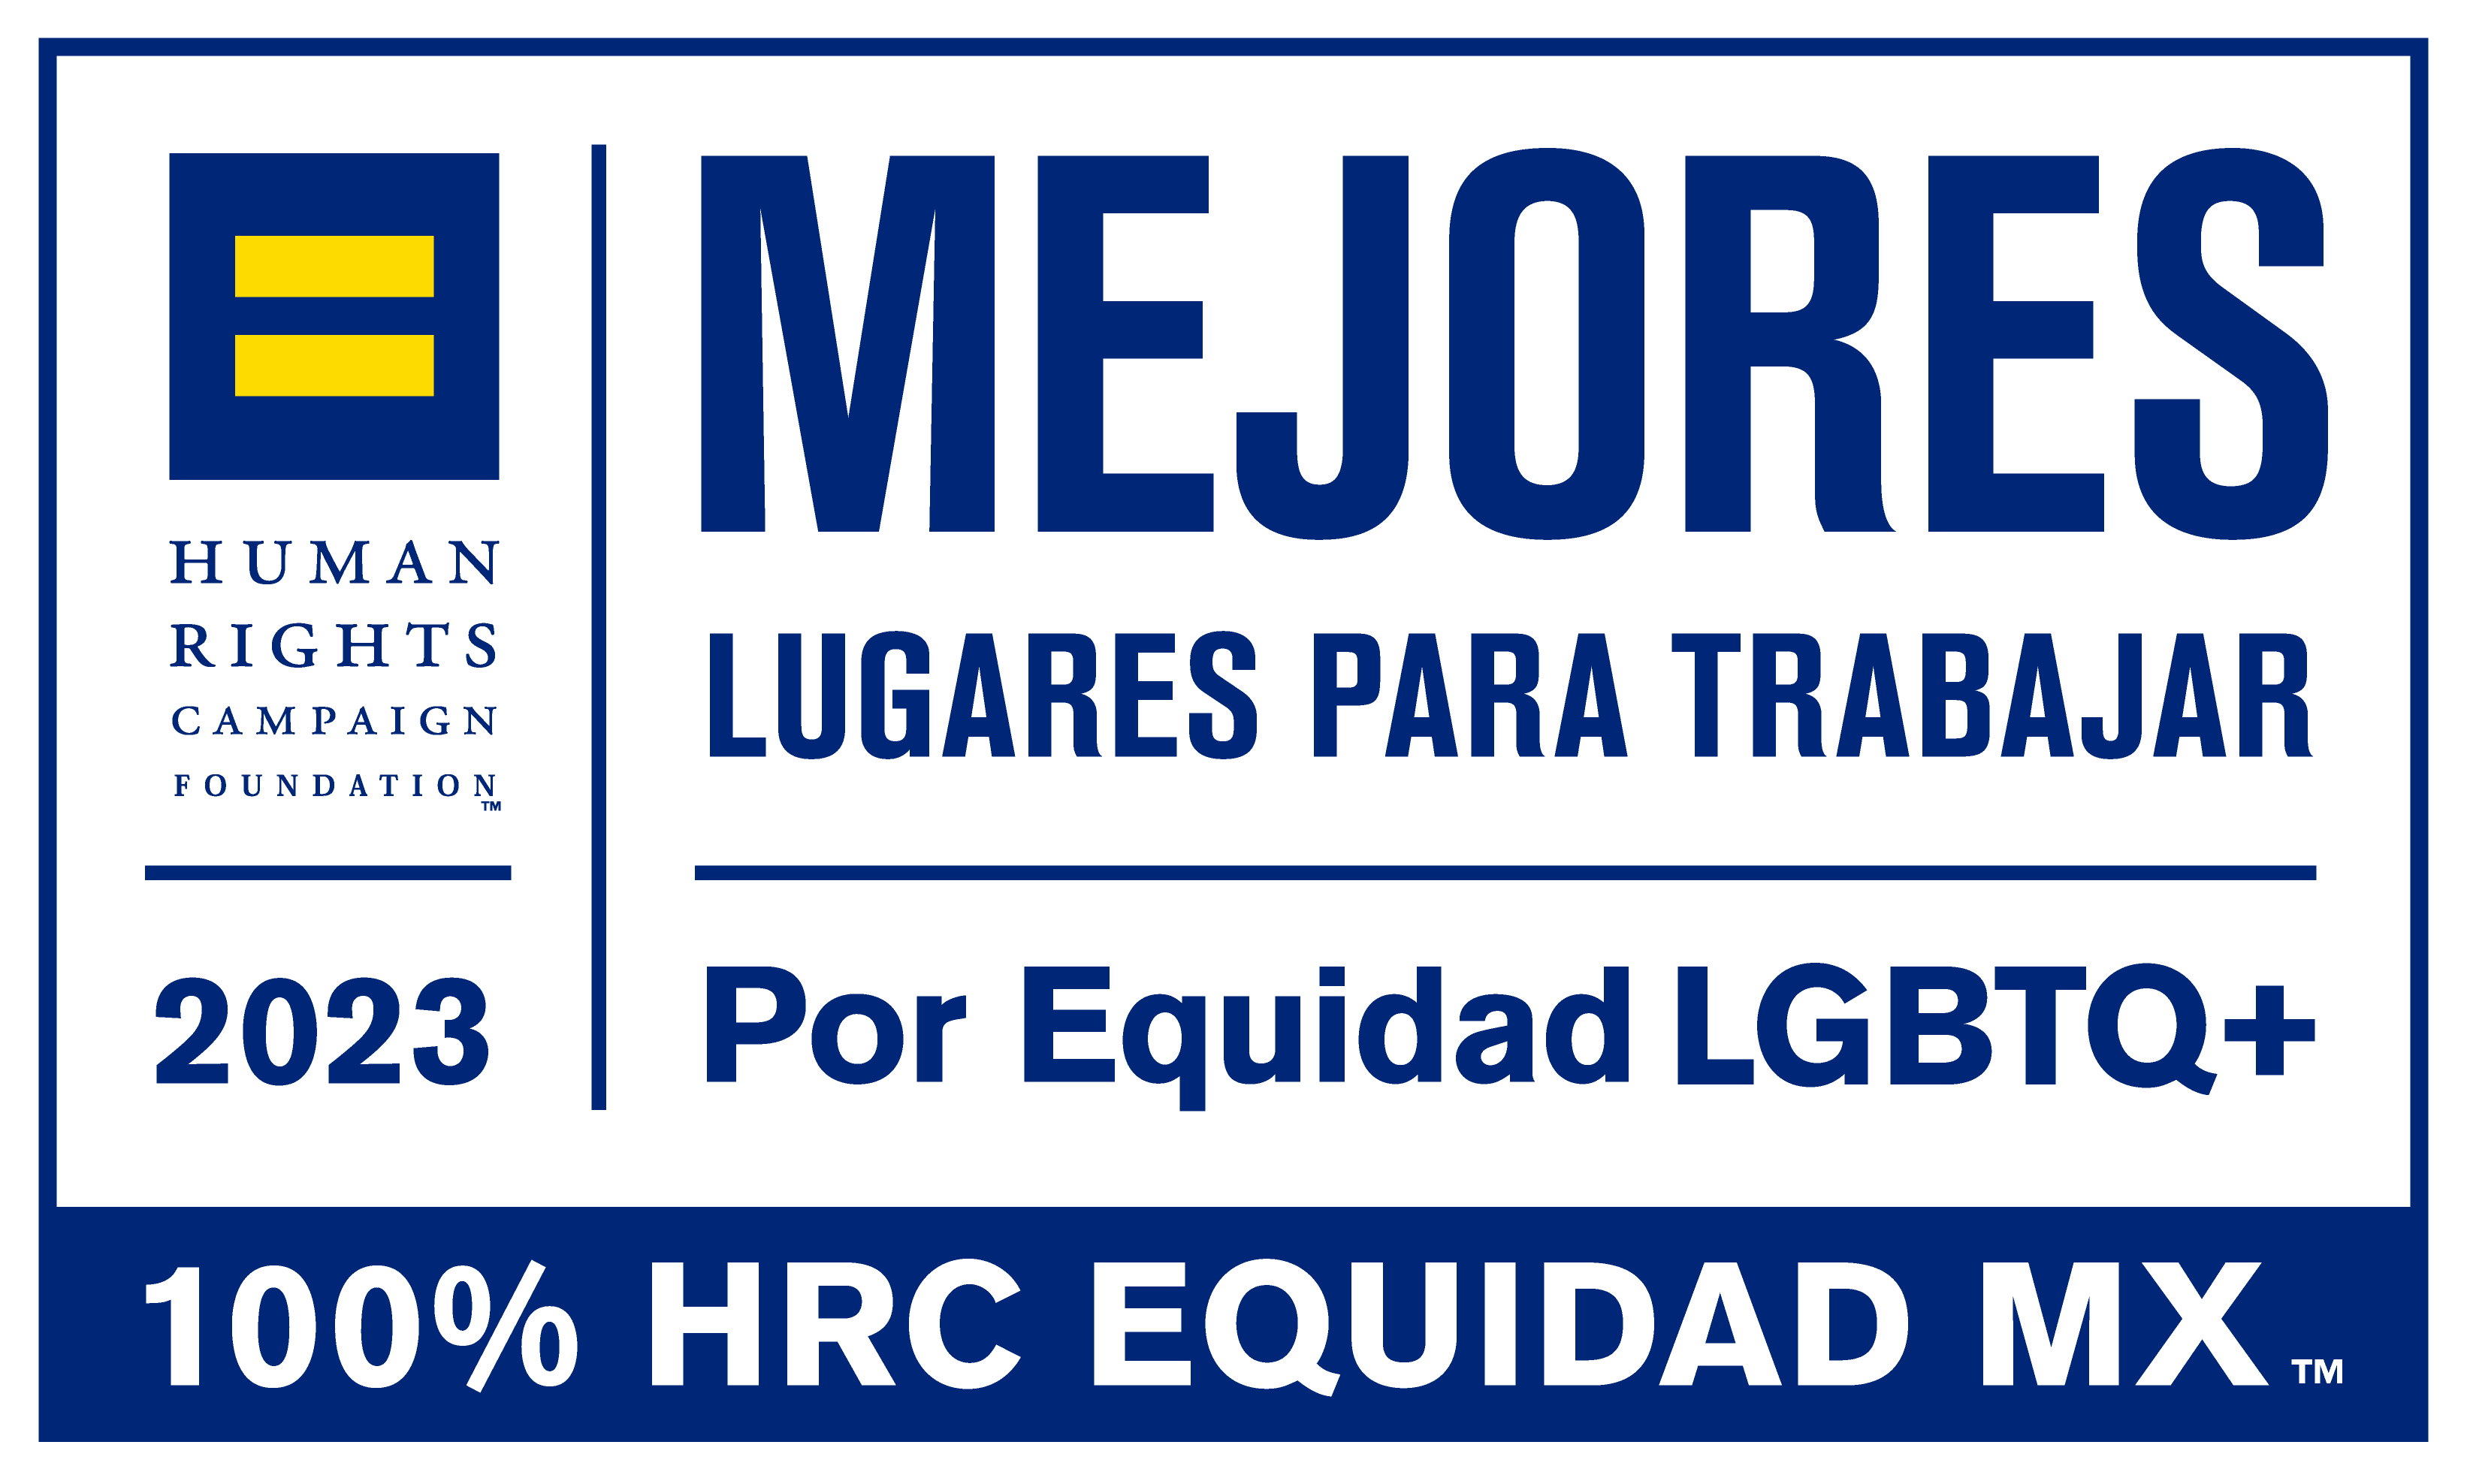 Equidad MX